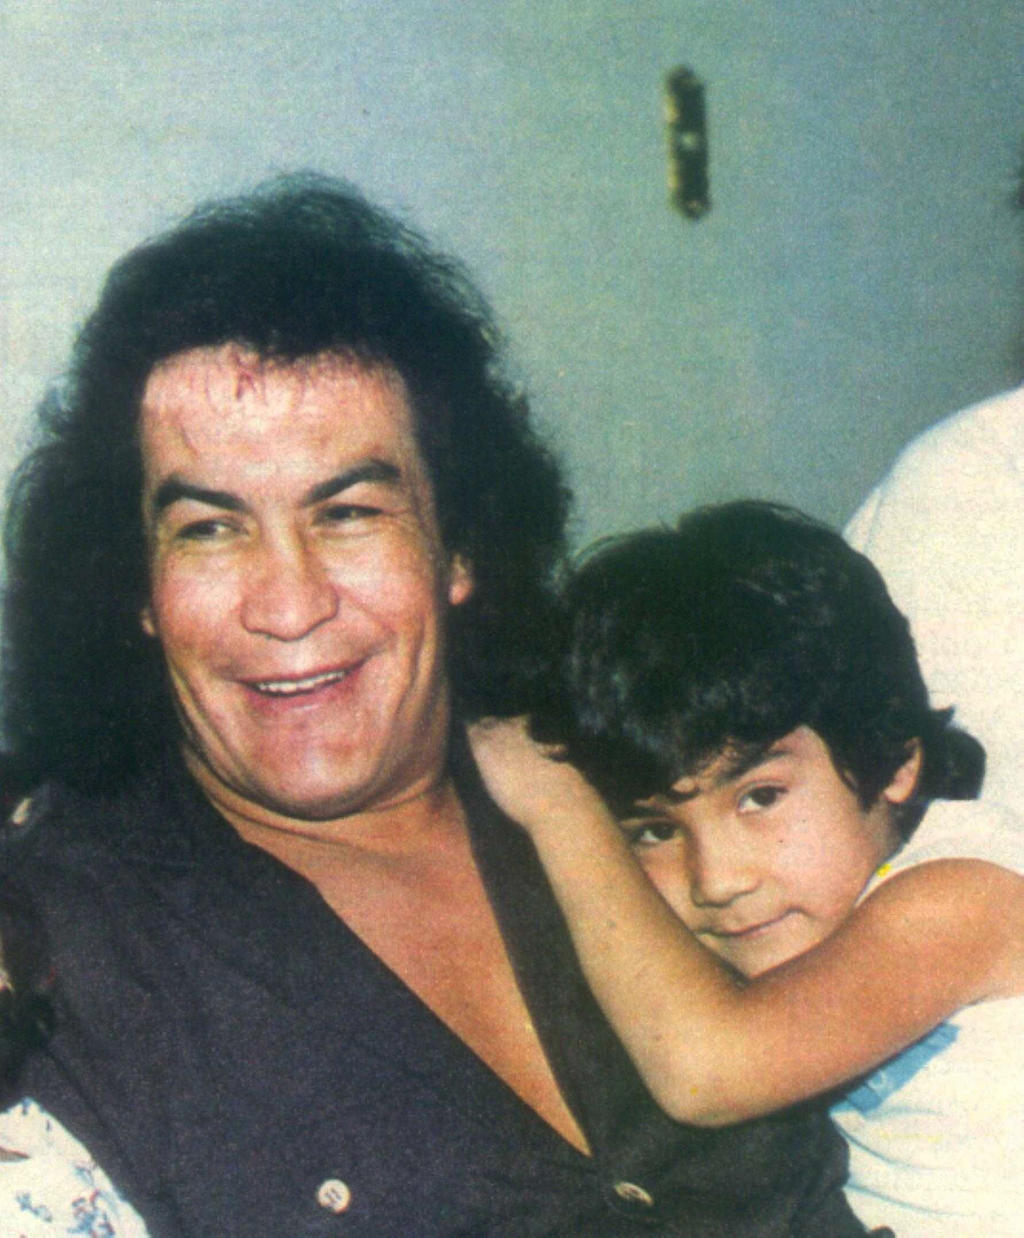 
El legendario luchador, Perro Aguayo, junto a su hijo el Hijo del Perro Aguayo, quien siguió los pasos de su padre en el mundo de la lucha. (Notimex)